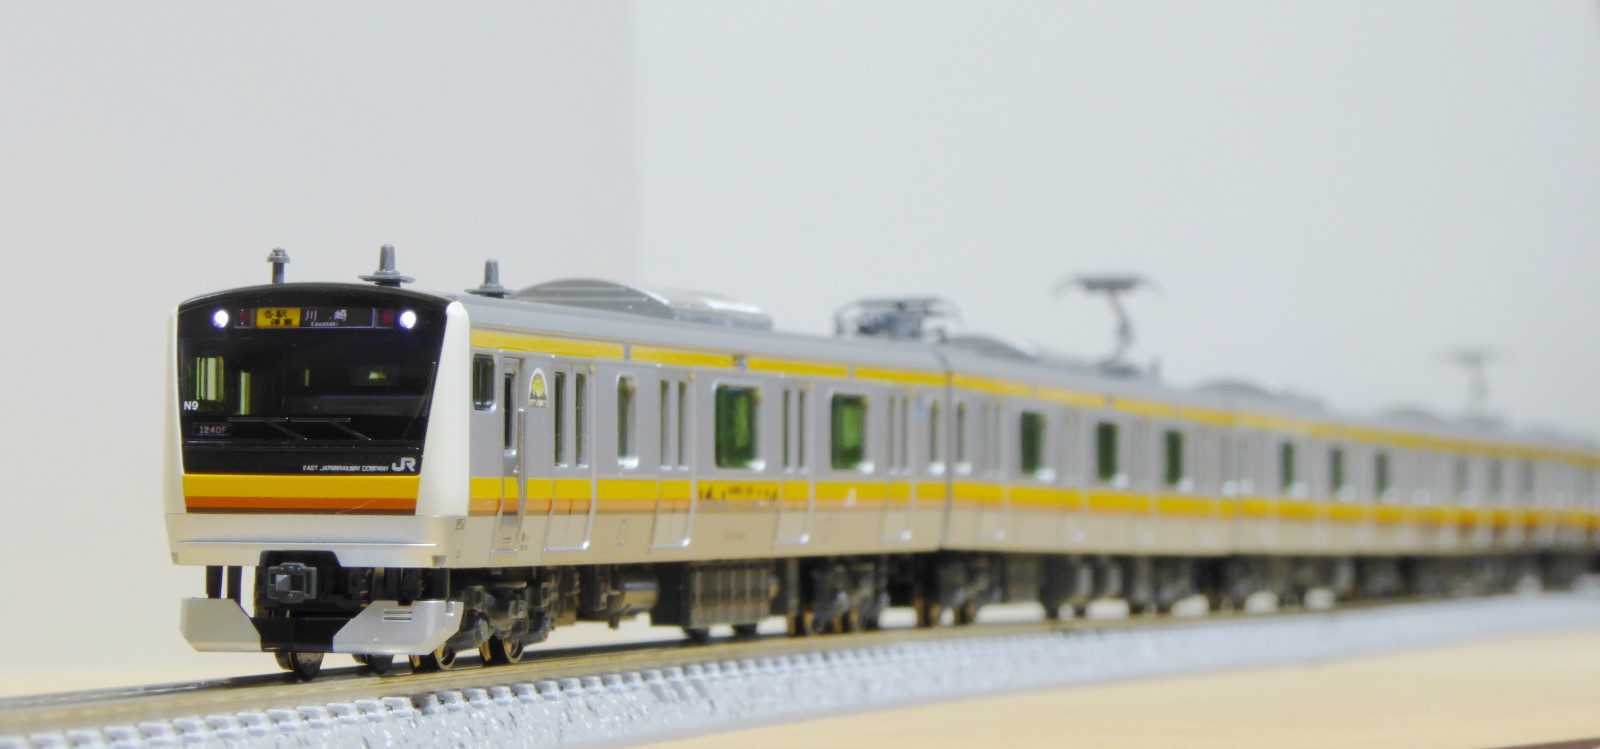 KATO E233系8000番台 南武線 入線 | 気軽にNゲージ＠鉄道模型を楽しむ